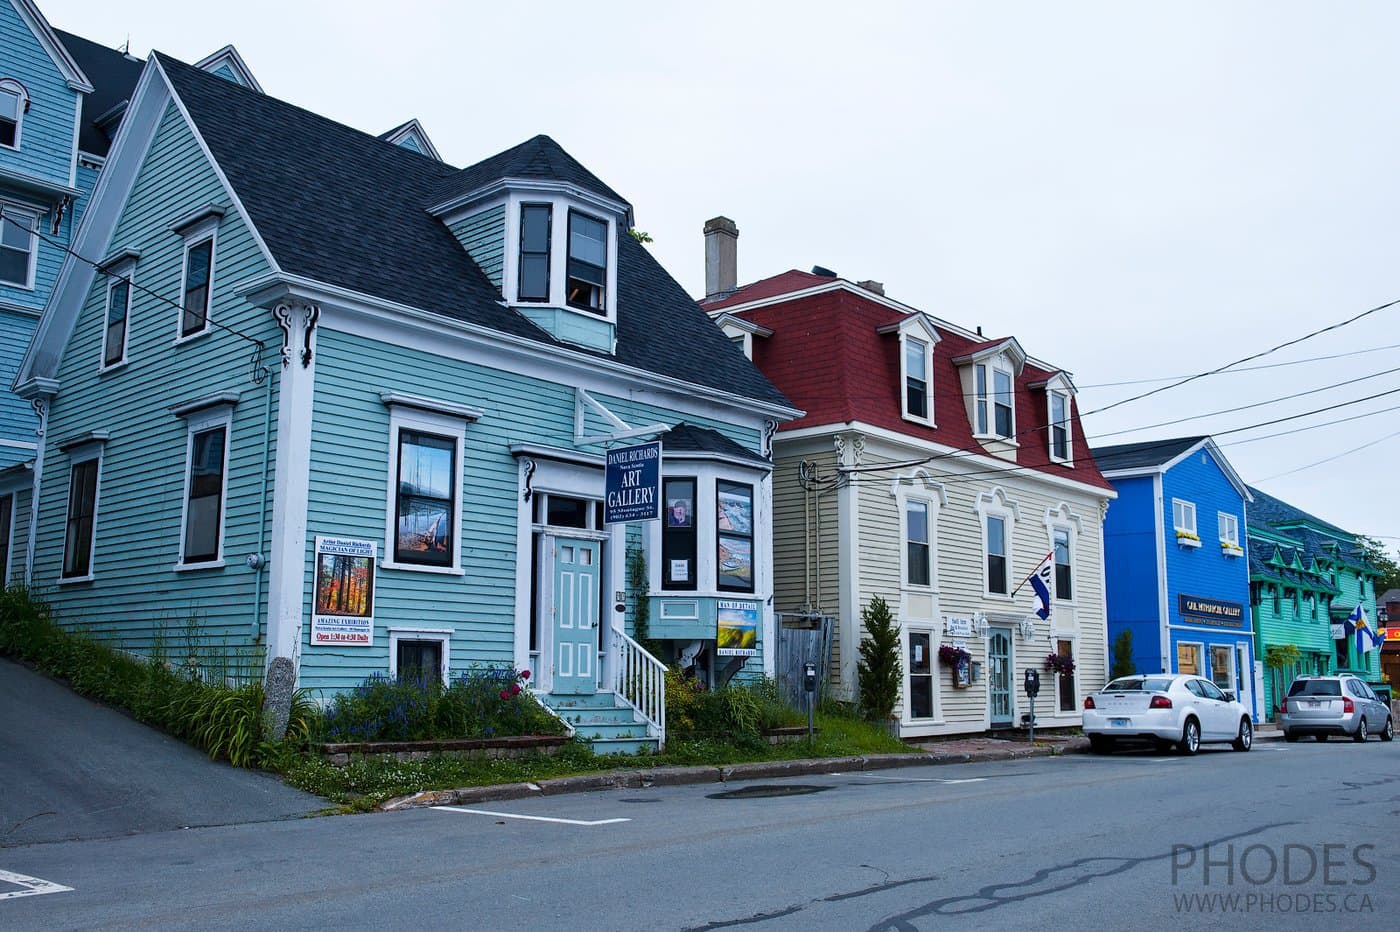 Maisons à Lunenburge à Nouvelle-Écosse